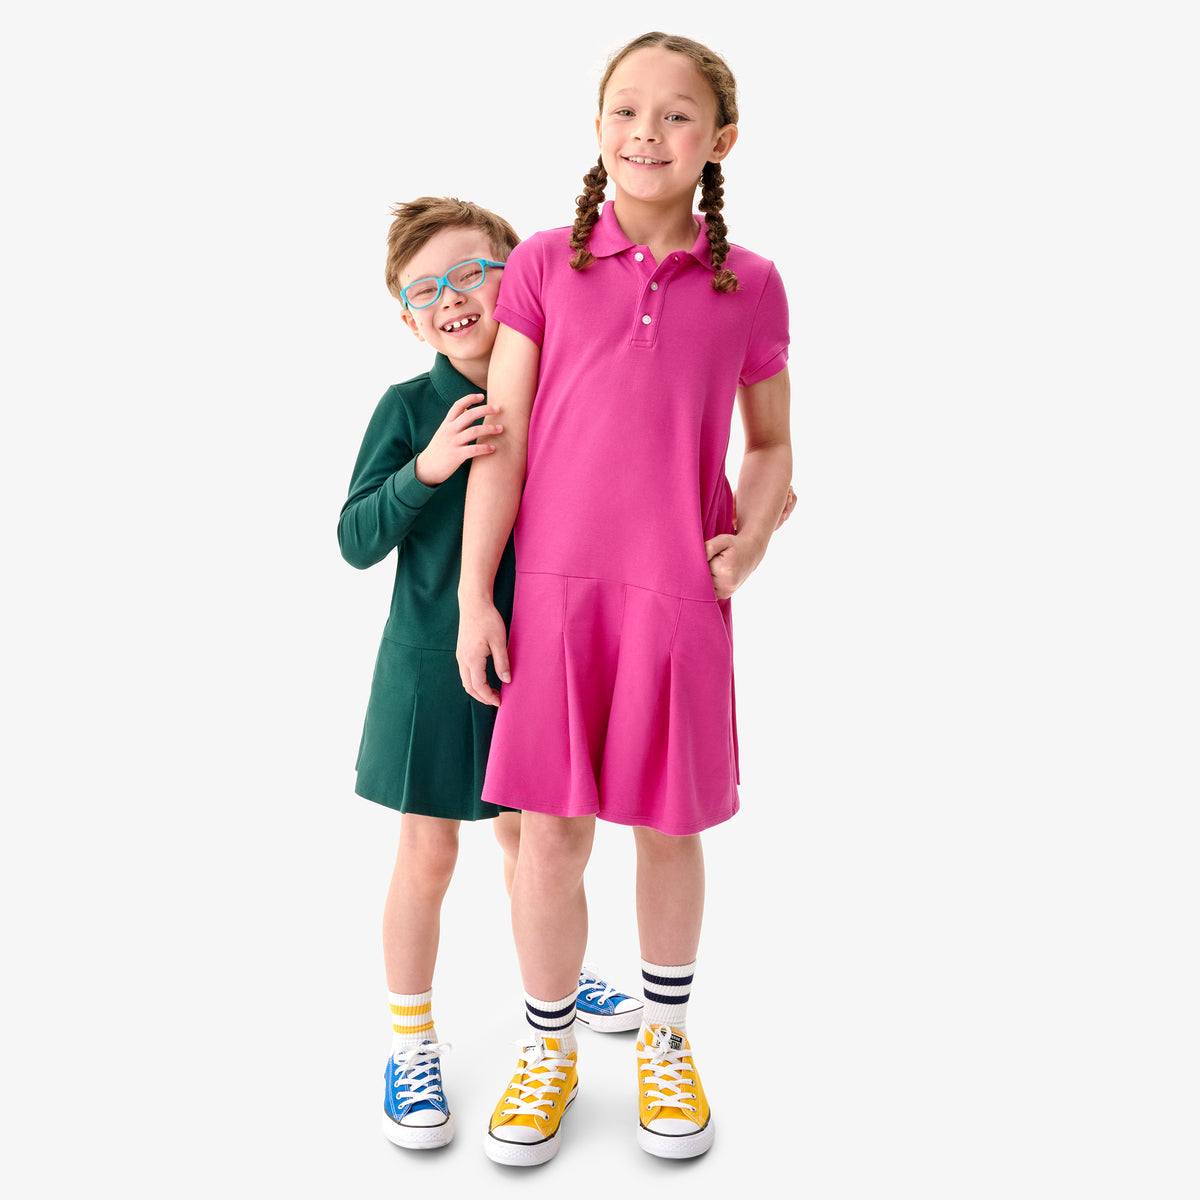 Short sleeve pique polo dress | Primary.com